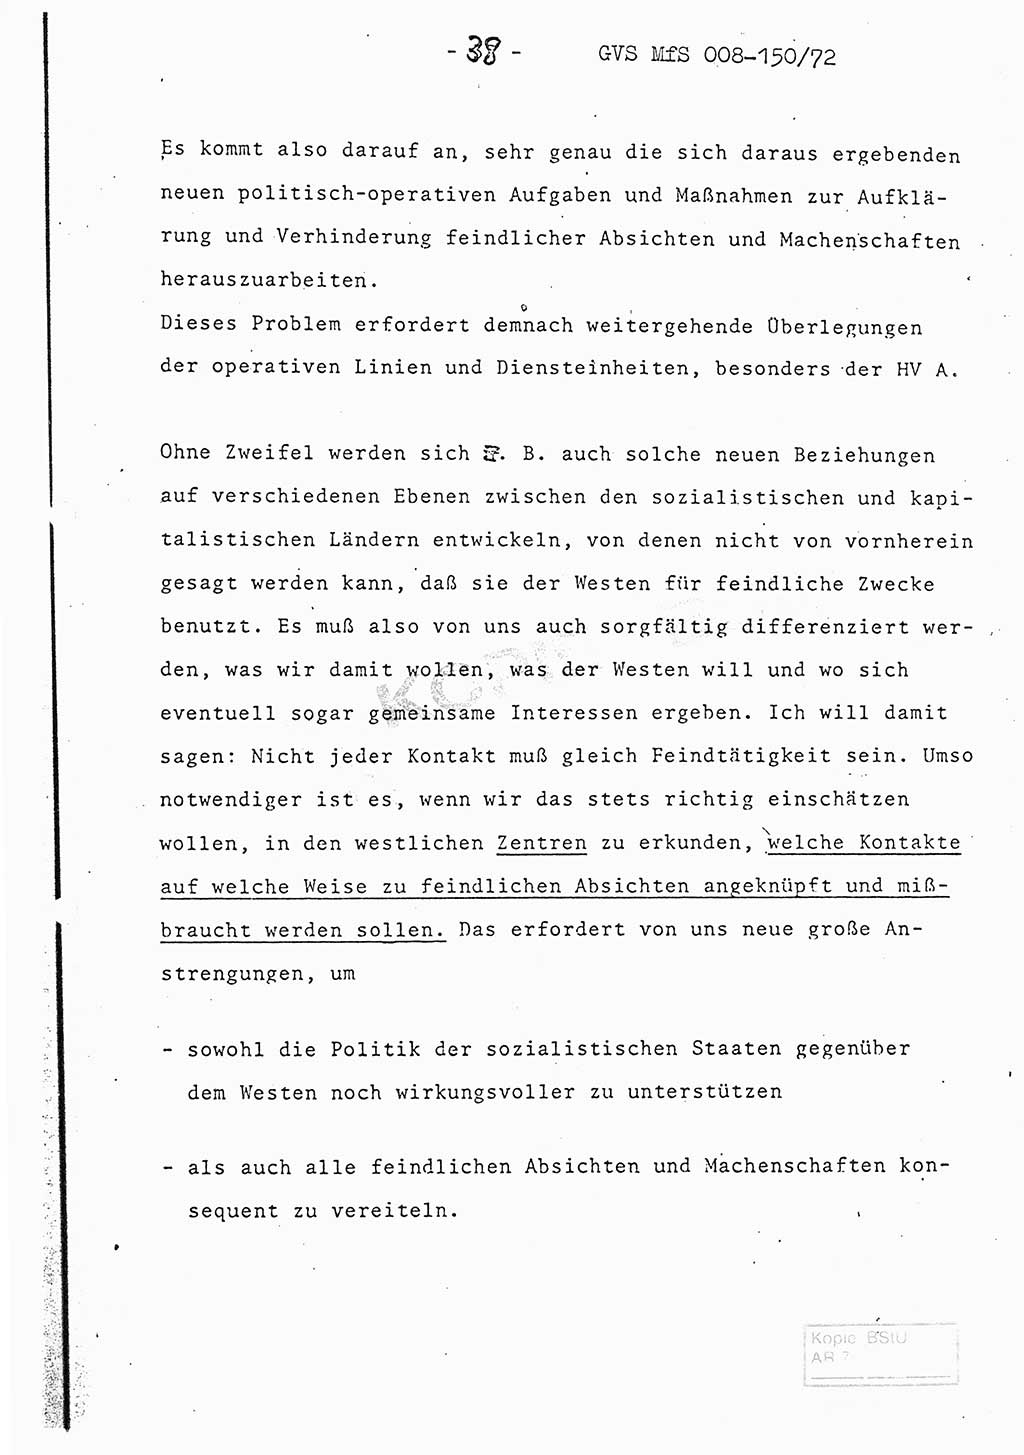 Referat (Entwurf) des Genossen Minister (Generaloberst Erich Mielke) auf der Dienstkonferenz 1972, Ministerium für Staatssicherheit (MfS) [Deutsche Demokratische Republik (DDR)], Der Minister, Geheime Verschlußsache (GVS) 008-150/72, Berlin 25.2.1972, Seite 38 (Ref. Entw. DK MfS DDR Min. GVS 008-150/72 1972, S. 38)